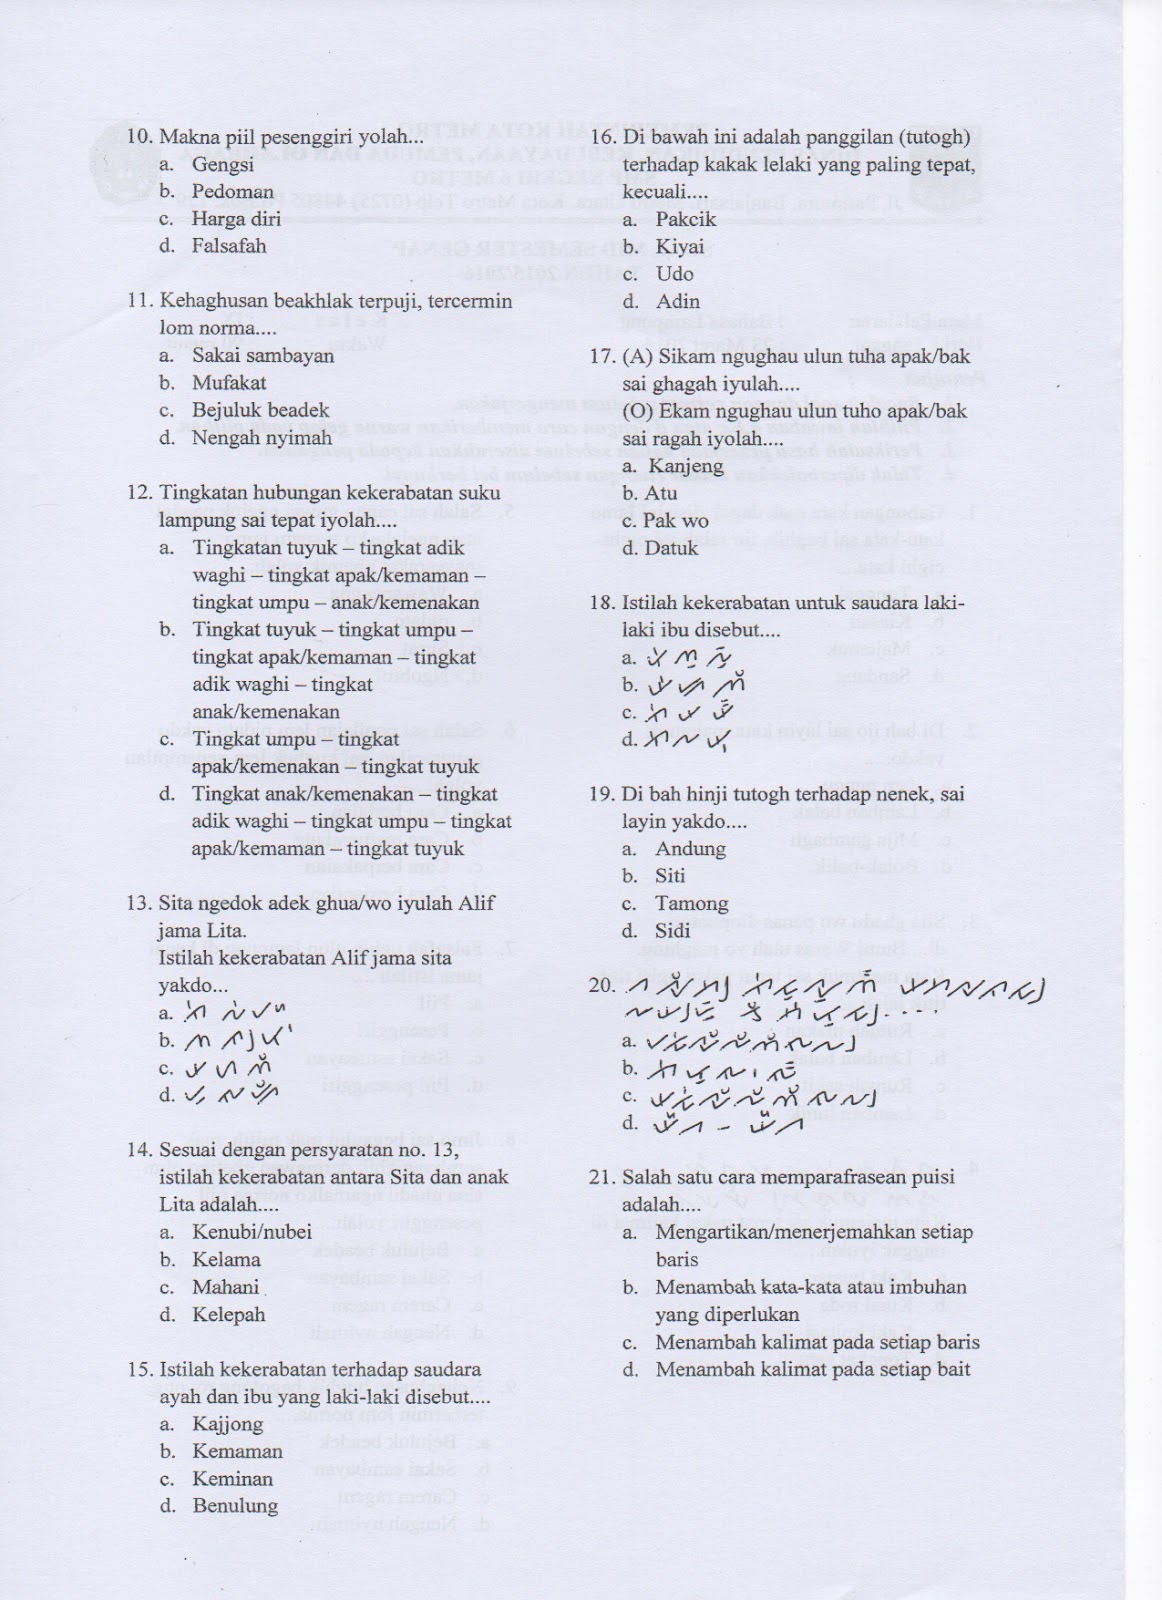 Contoh Soal Bahasa Lampung Kelas 11 File Guru Sd Smp Sma